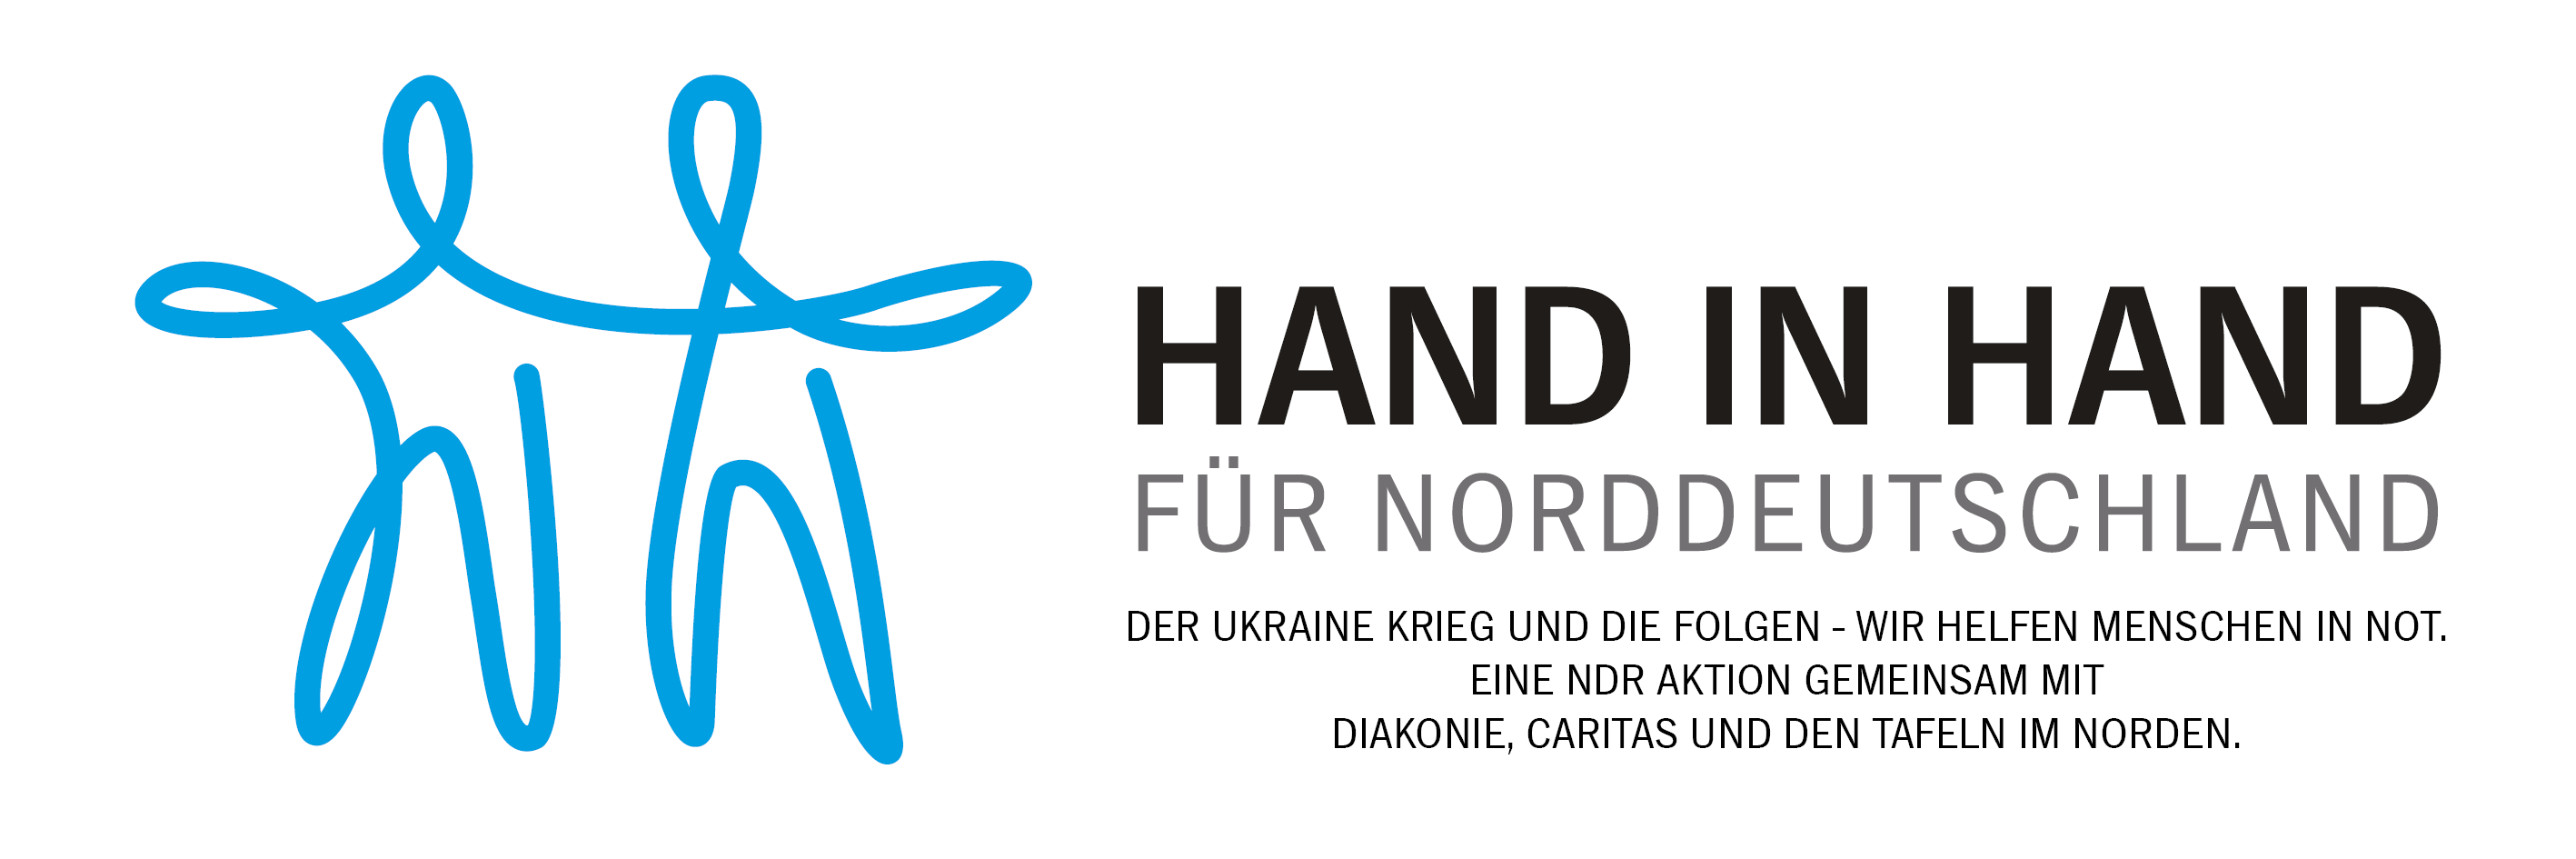 Das Logo der NDR Aktion Hand in hand für Norddeutschland